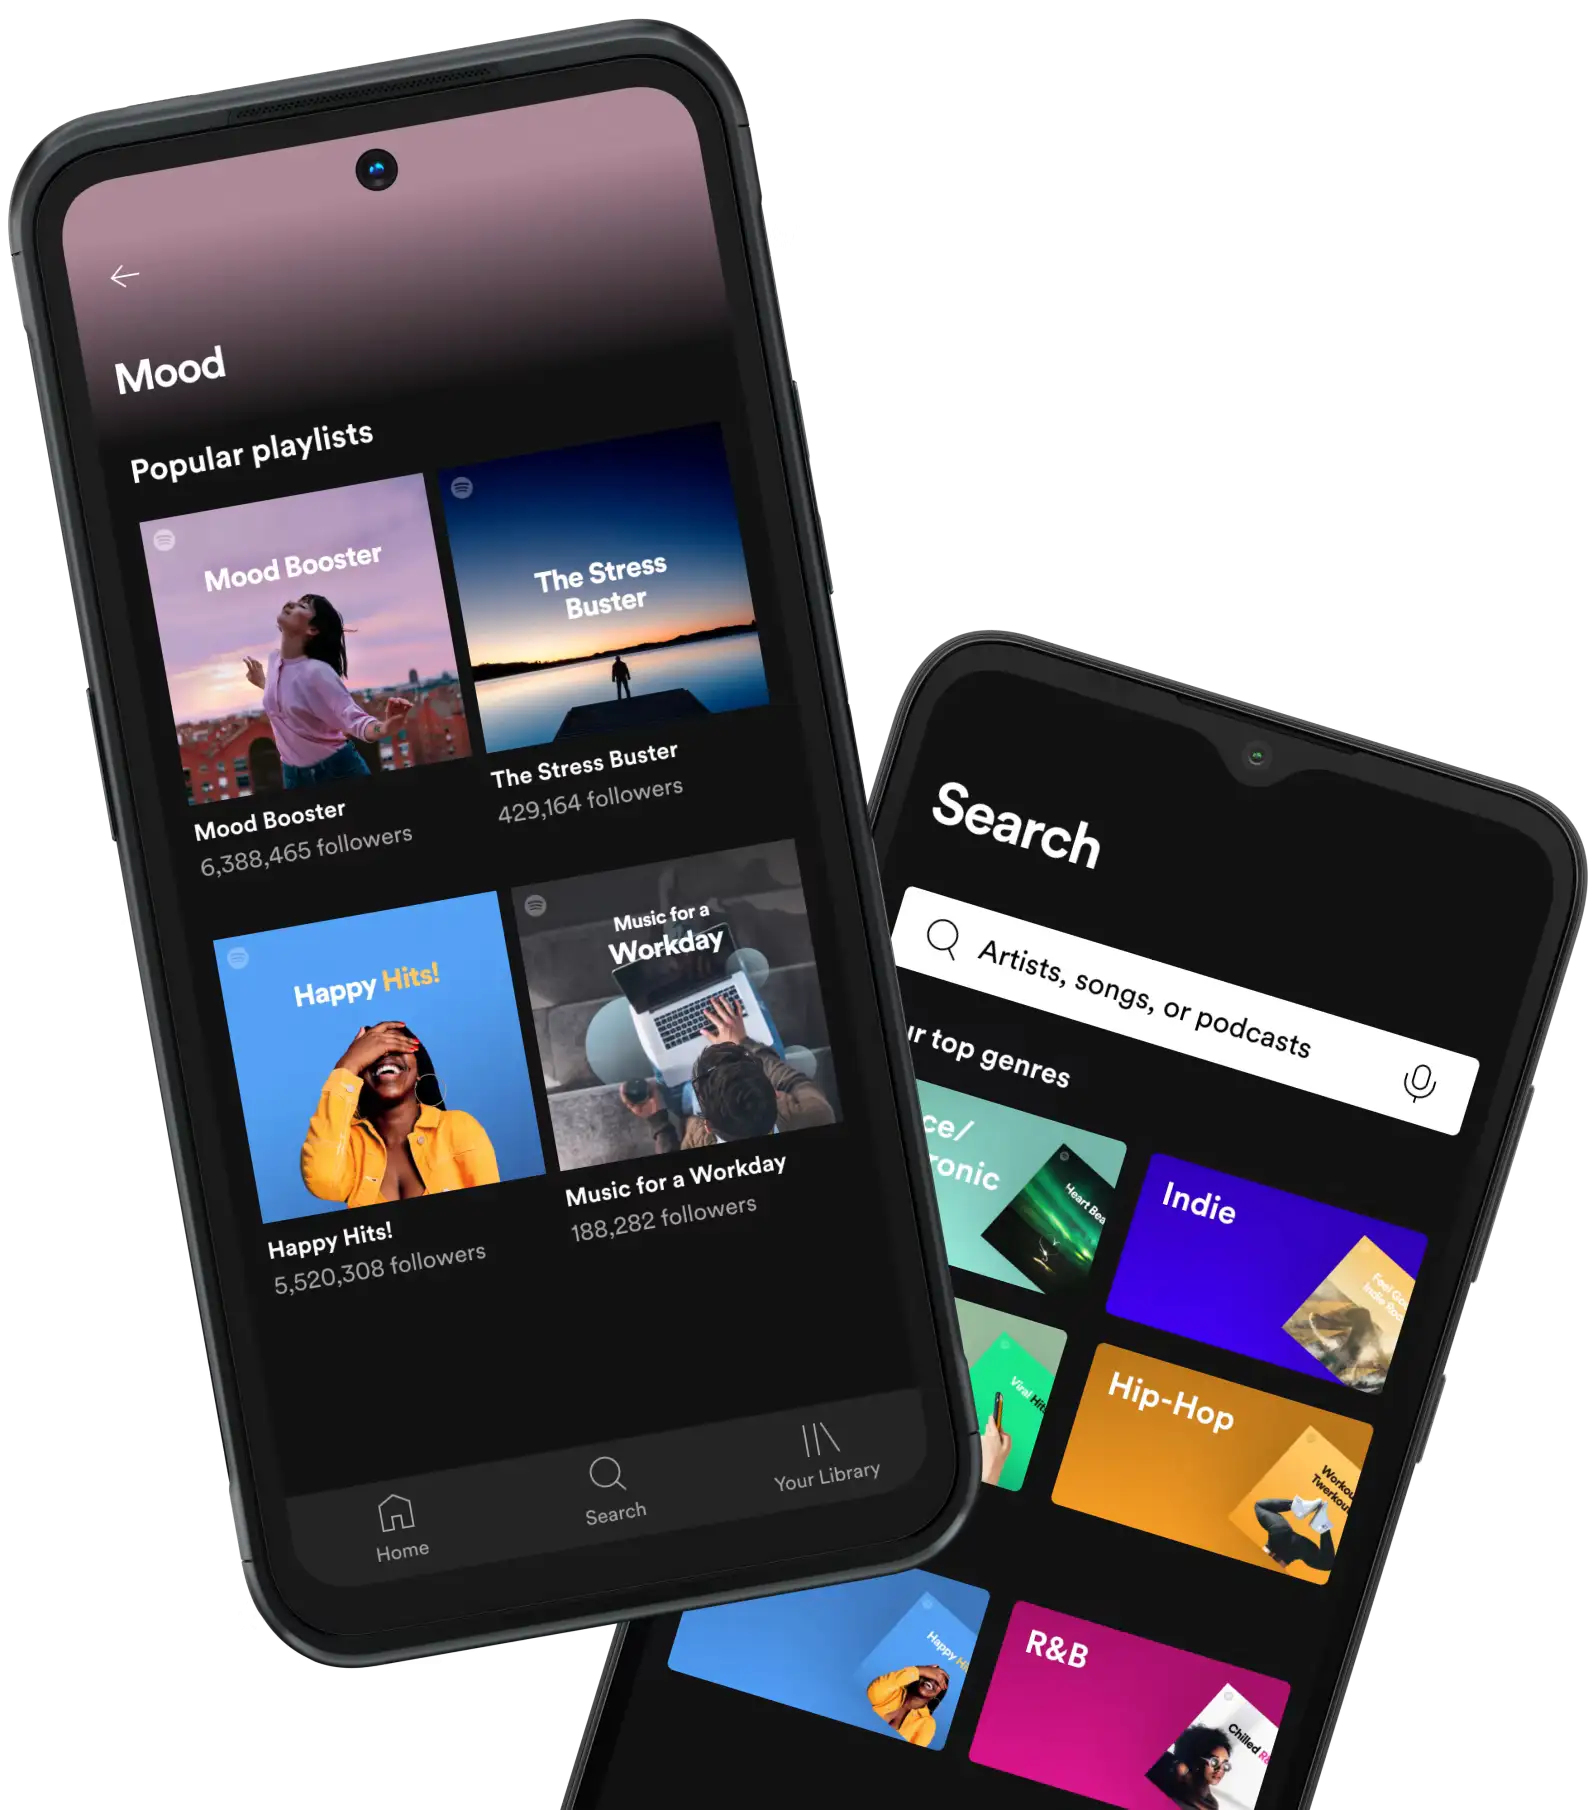 گوشی های نوکیا اکنون دارای اپلیکیشن از پیش نصب شده Spotify است تا در آن به میلیون ها موزیک و پادکست از سراسر دنیا گوش دهید.